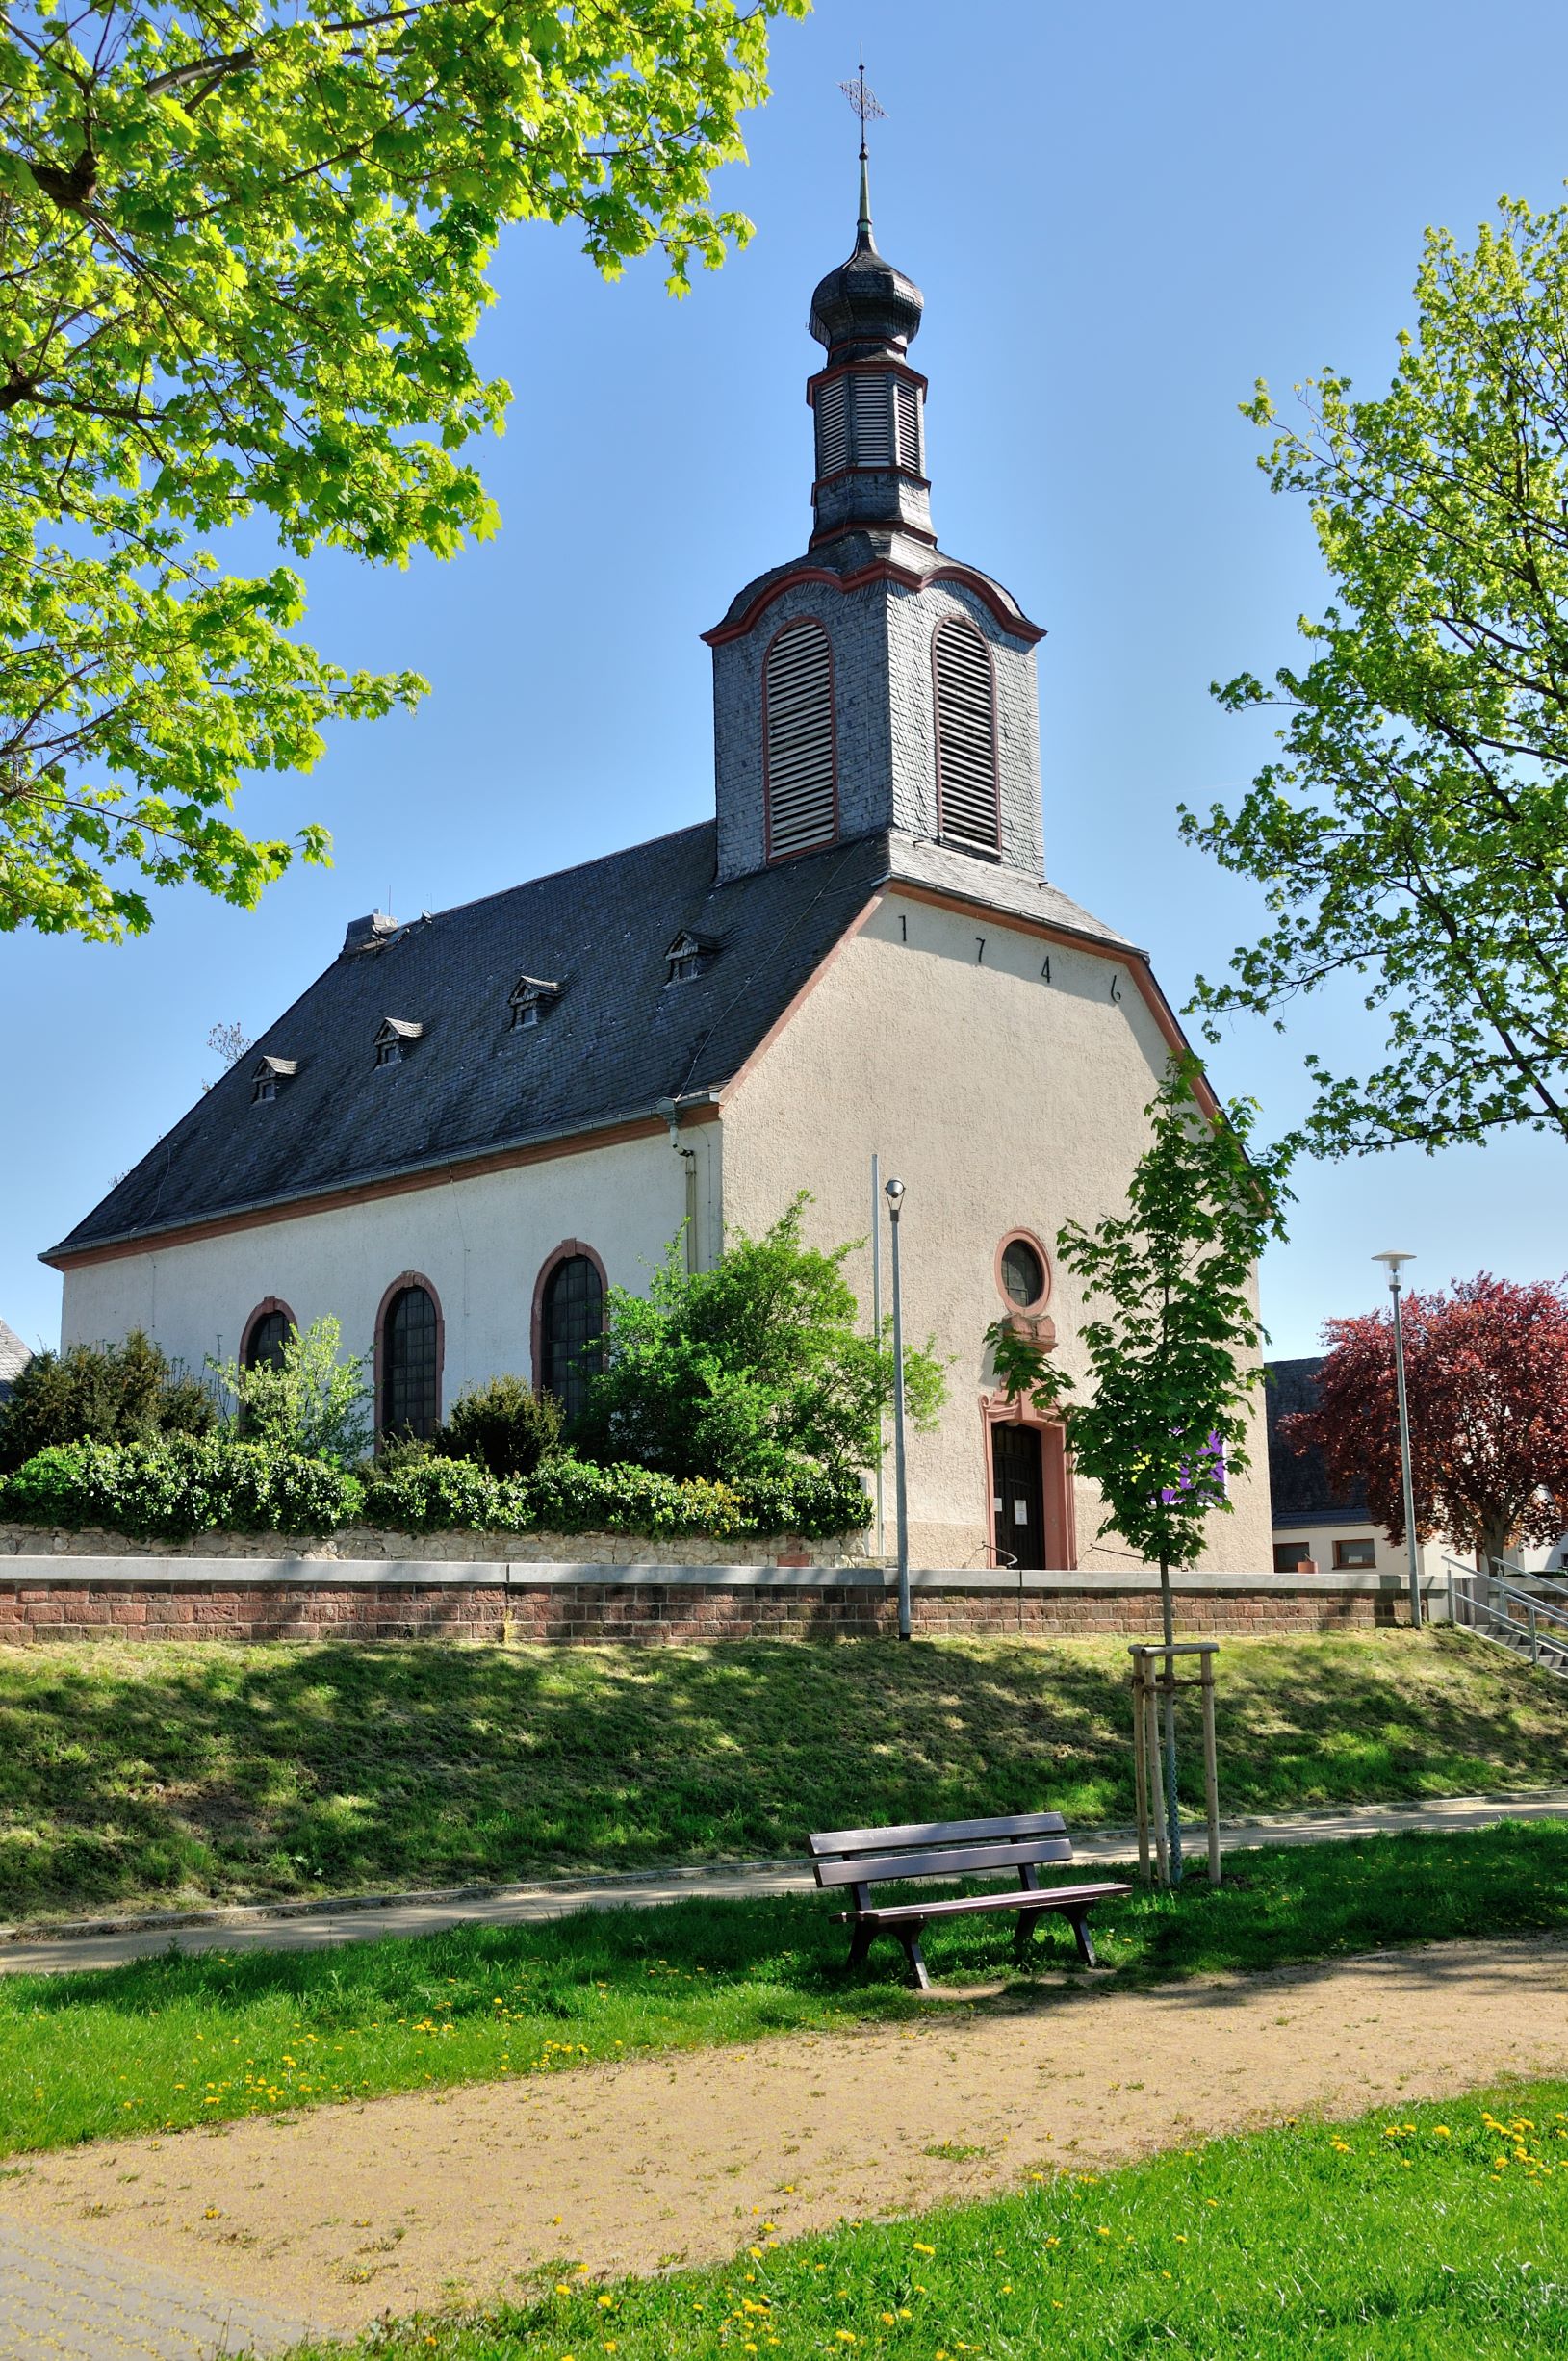 Bild 1 Evangelische Kirche Ginsheim-Gustavsburg - Evangelische Kirchengemeinde Ginsheim in Ginsheim-Gustavsburg